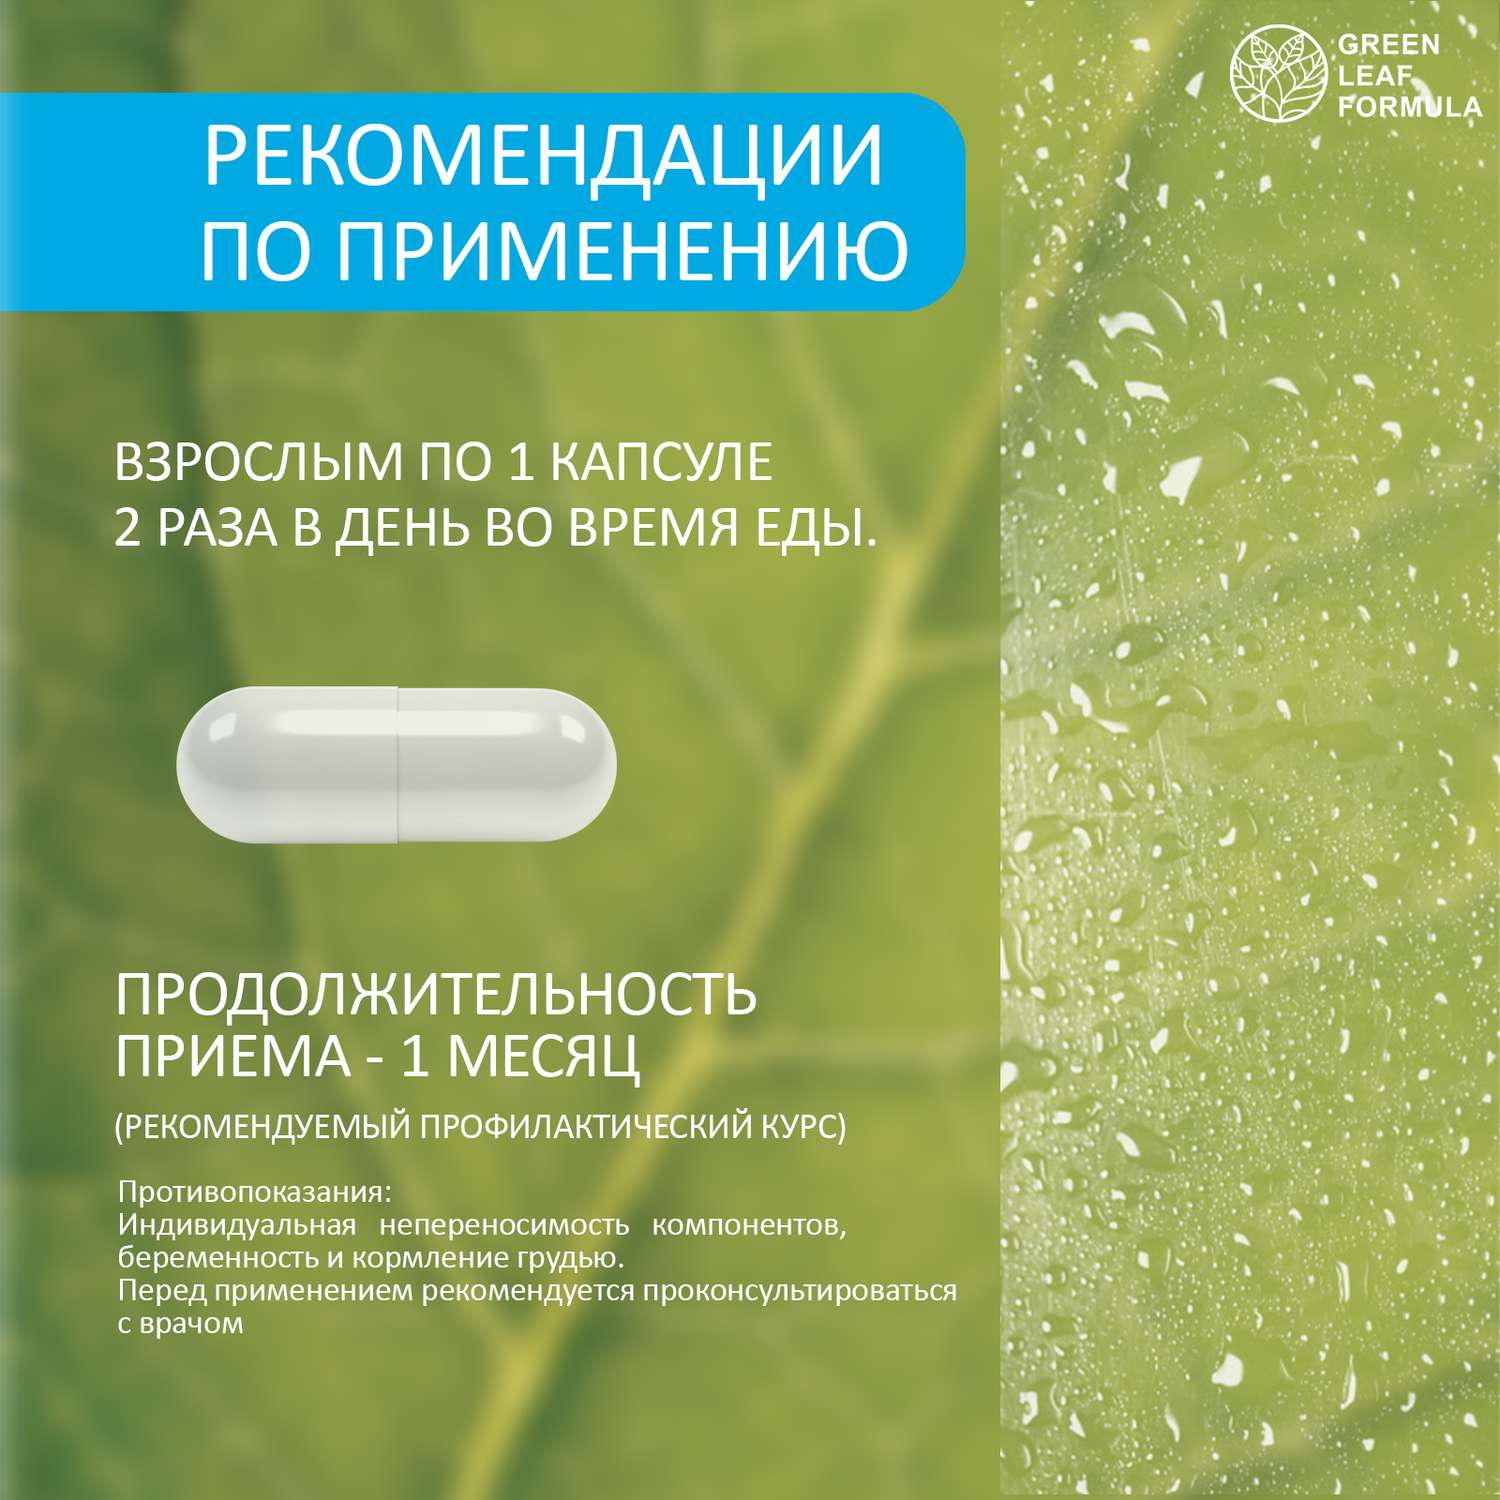 Метабиотик для кишечника Green Leaf Formula ферменты для пищеварения L-карнитин для снижения веса для иммунитета 2 банки - фото 9